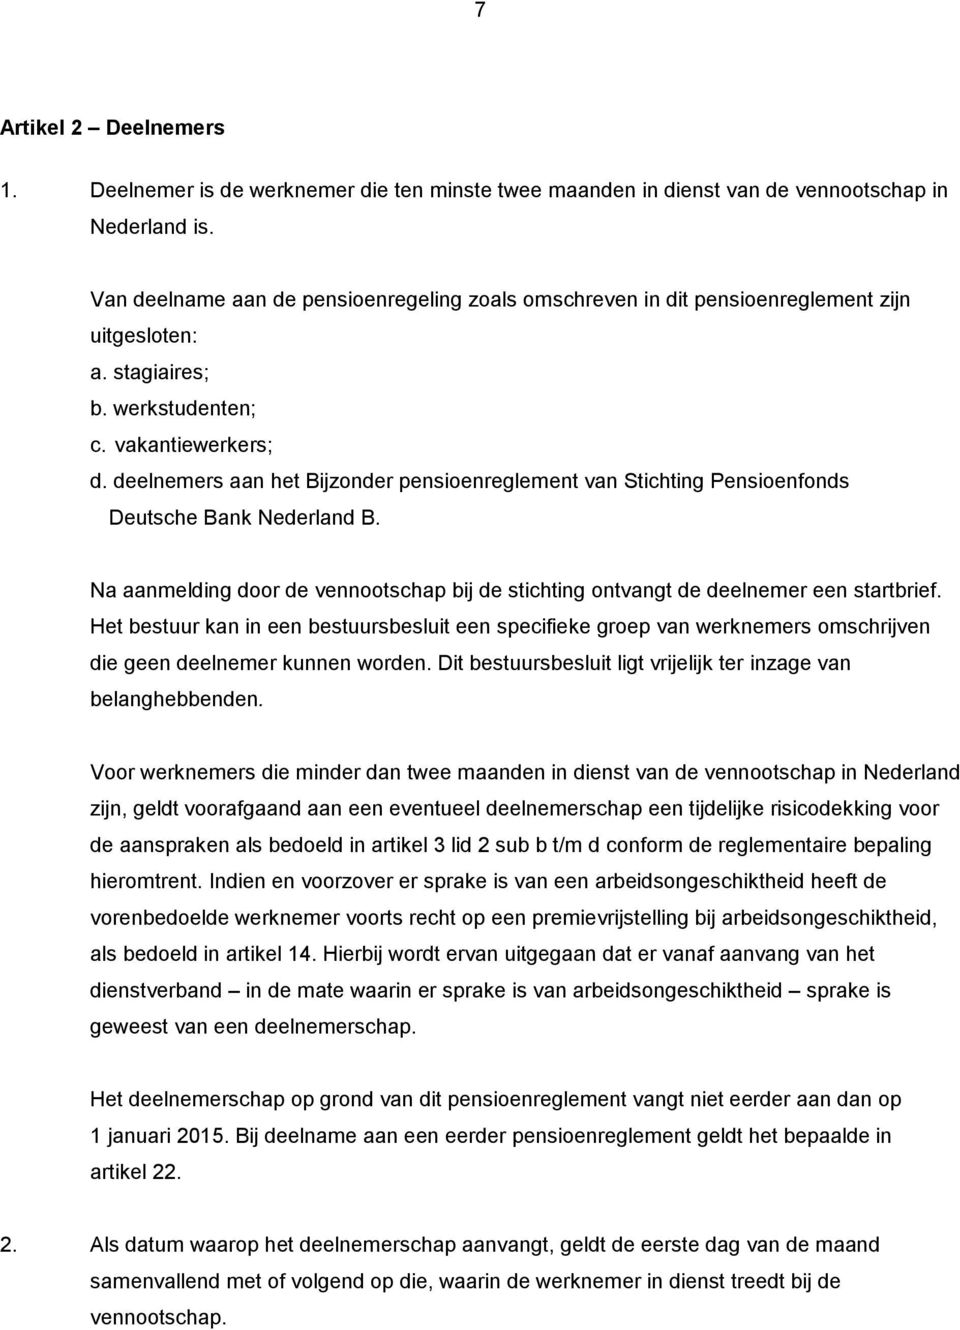 deelnemers aan het Bijzonder pensioenreglement van Stichting Pensioenfonds Deutsche Bank Nederland B. Na aanmelding door de vennootschap bij de stichting ontvangt de deelnemer een startbrief.